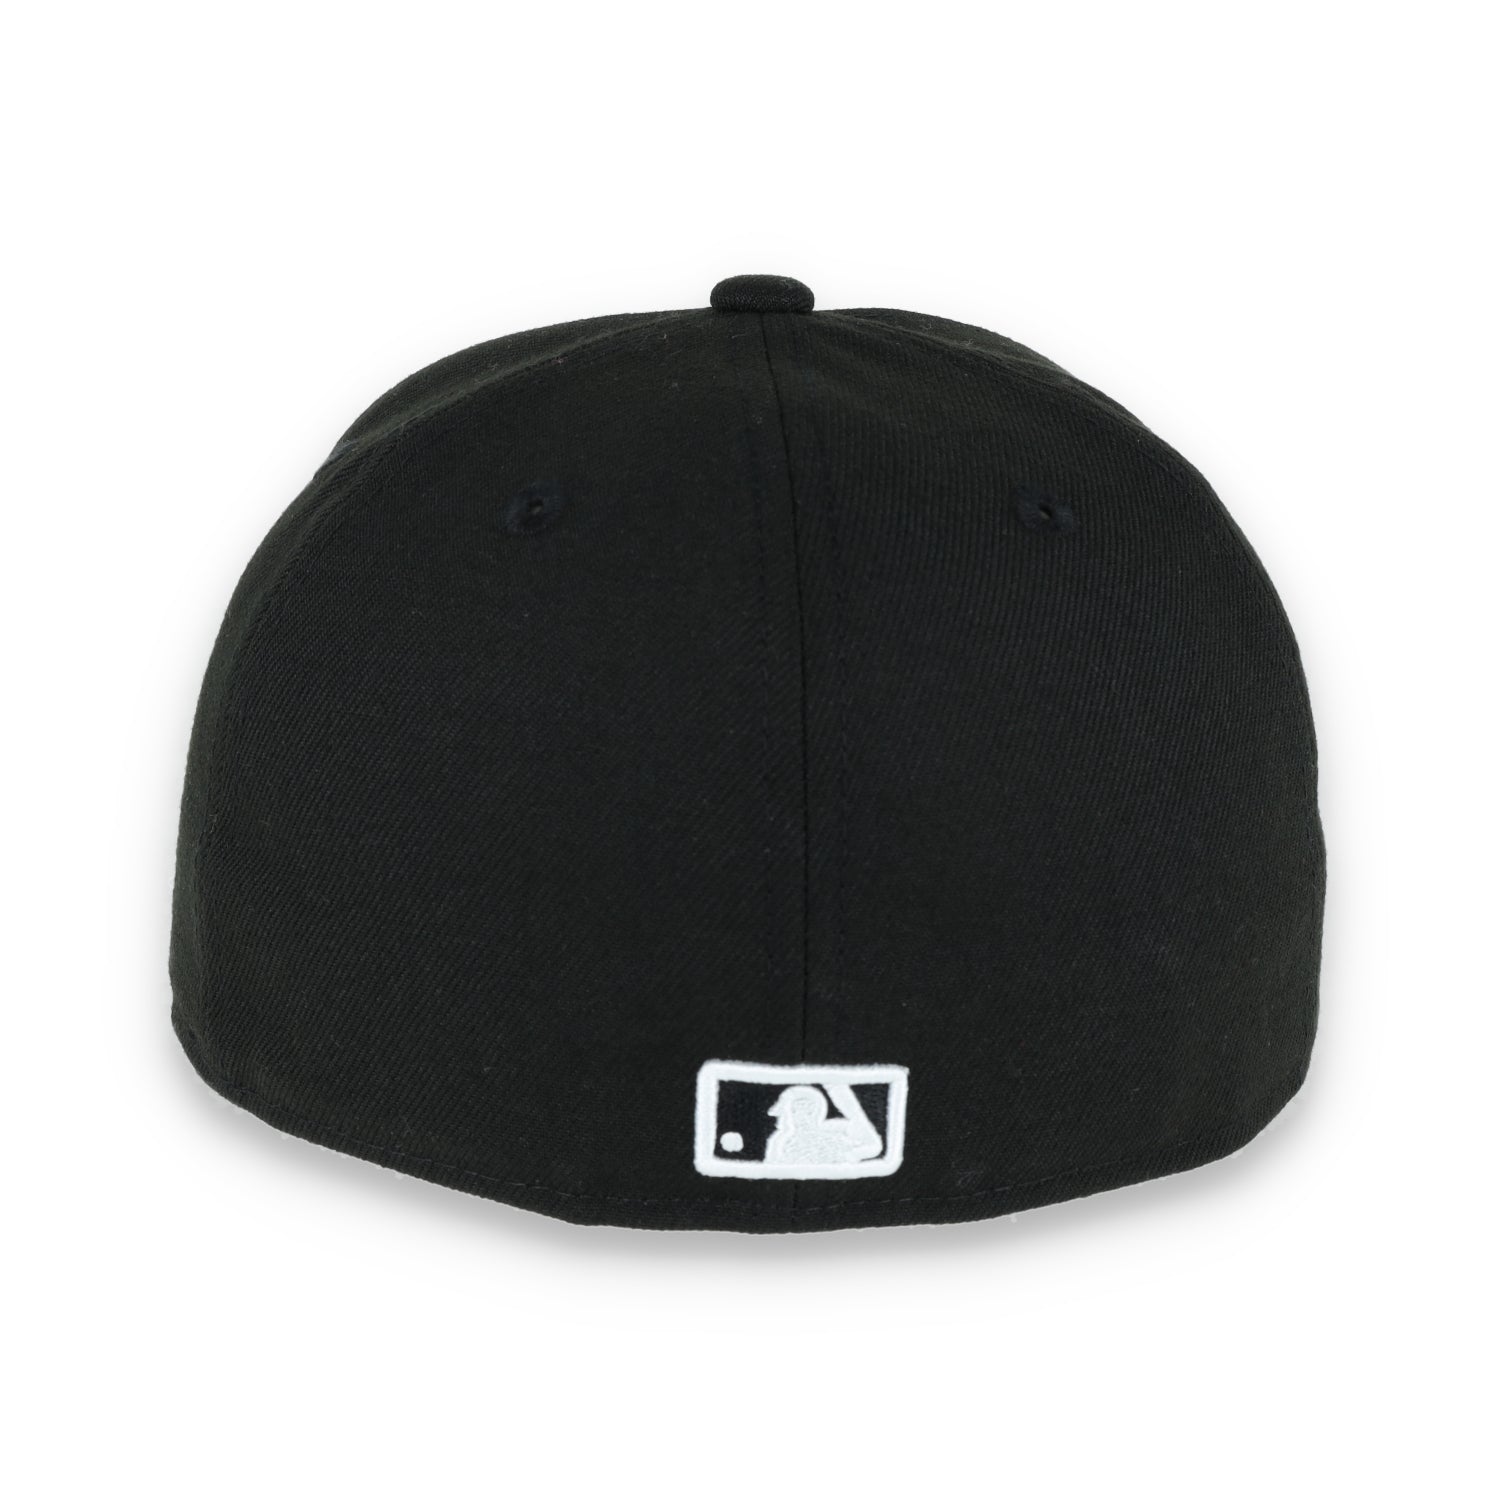 New Era Oakland Athletics Sugar Skull 59FIFTY Hat- Black